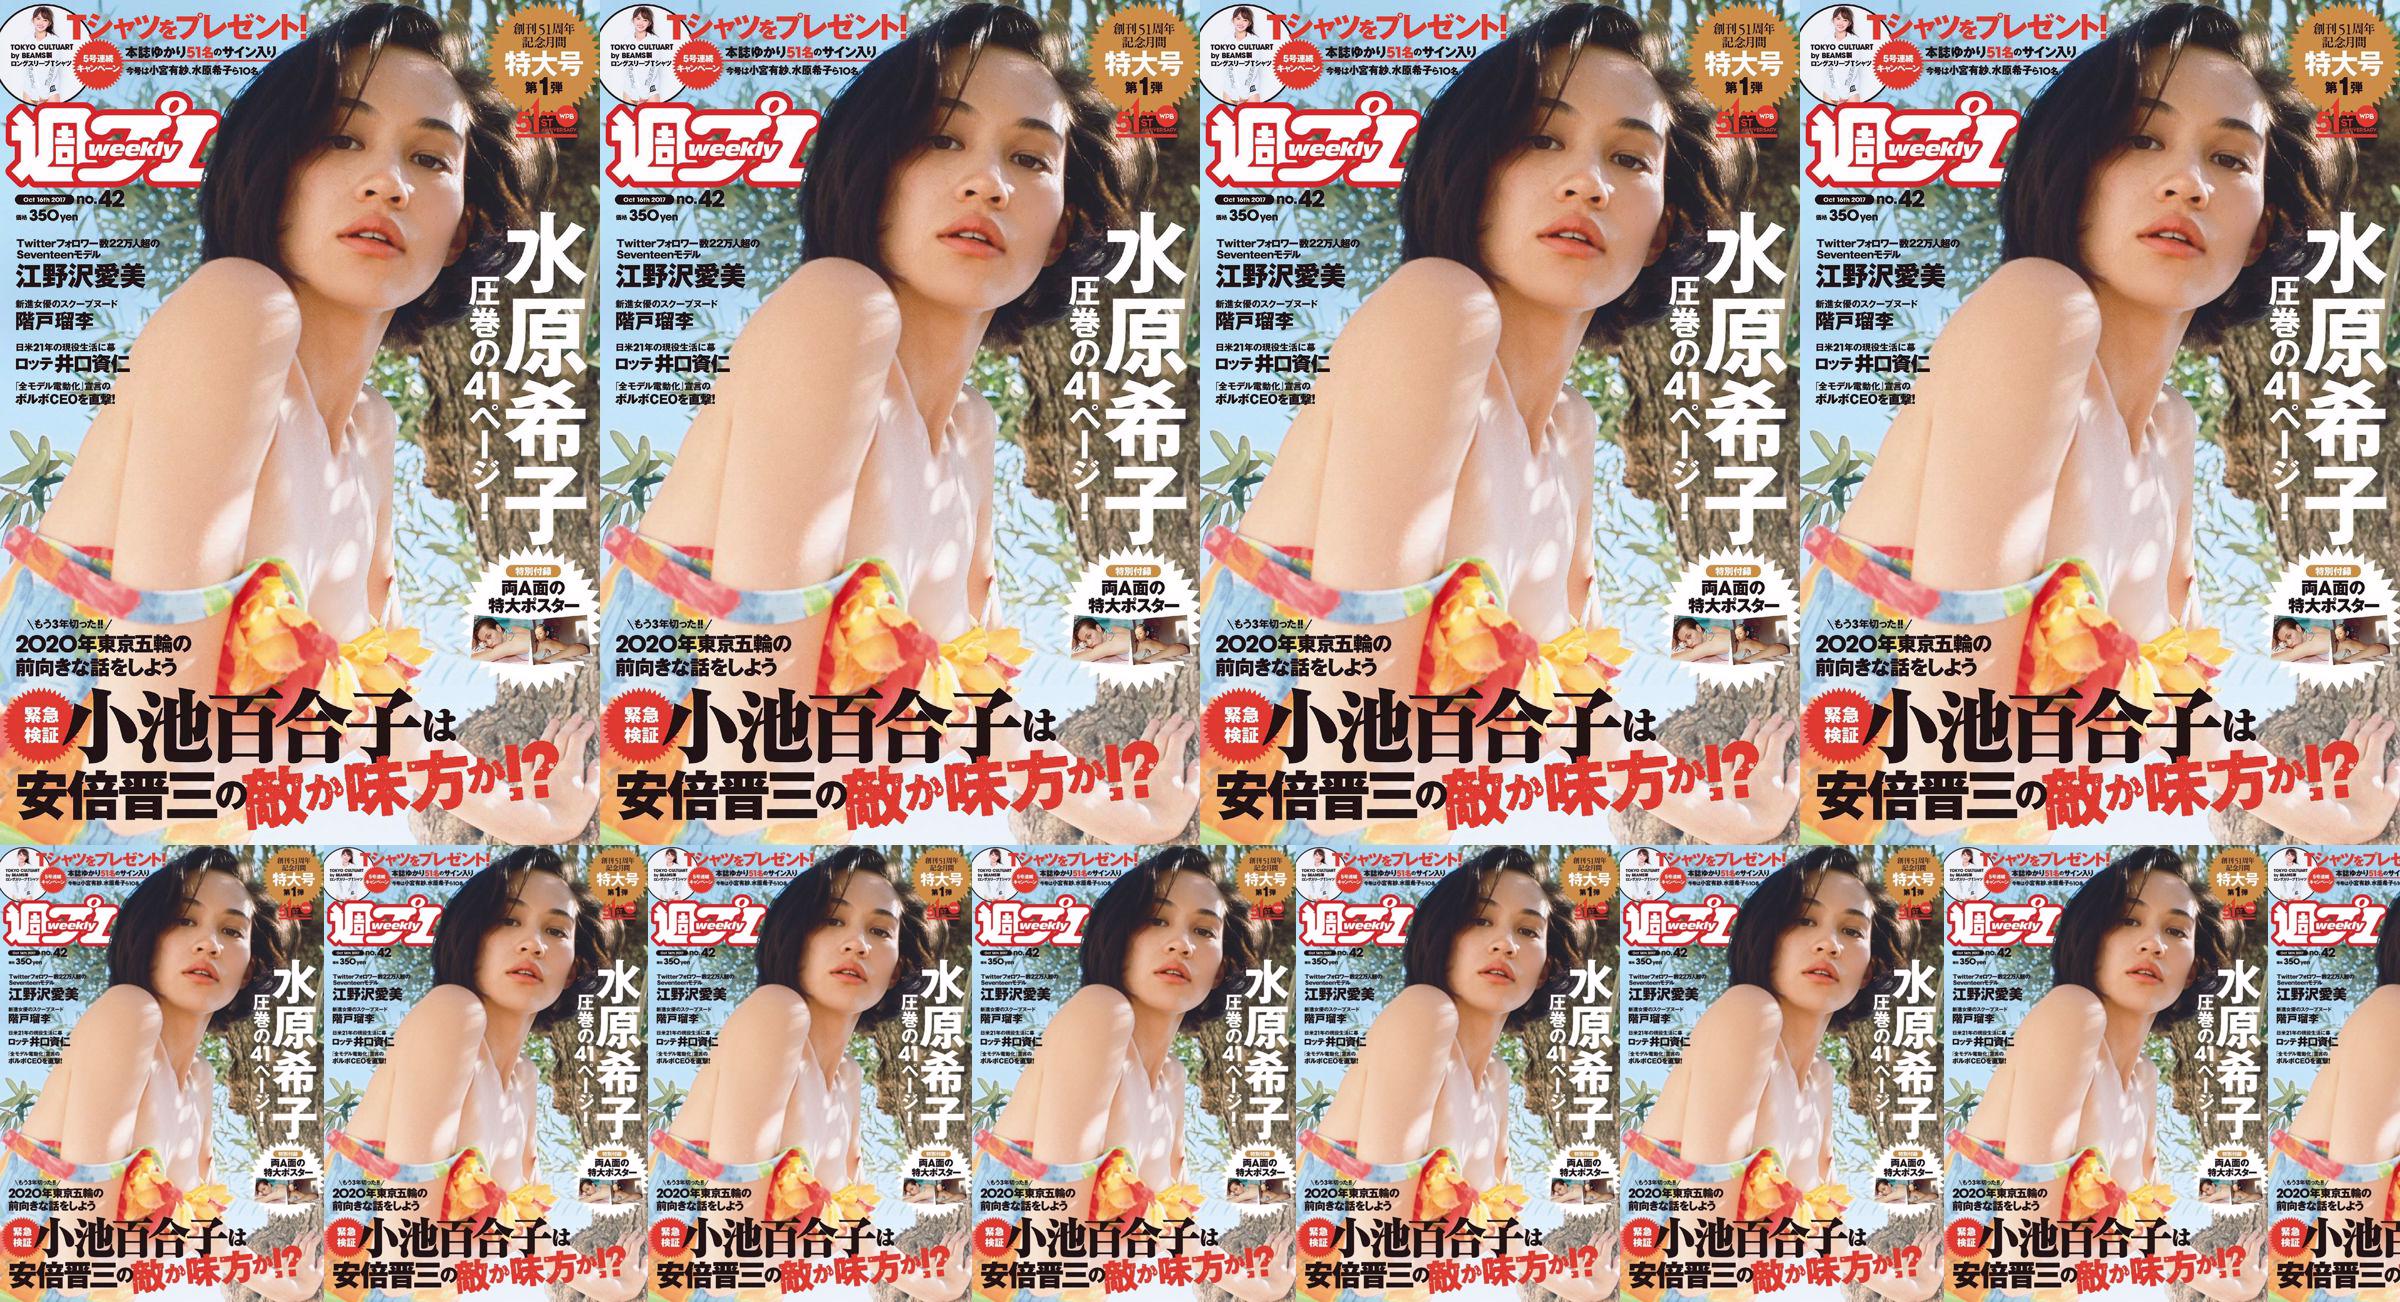 Kiko Mizuhara Manami Enosawa Serina Fukui Miu Nakamura Ruri Shinato [Weekly Playboy] 2017 No.42 Photo Magazine No.c39644 Page 1